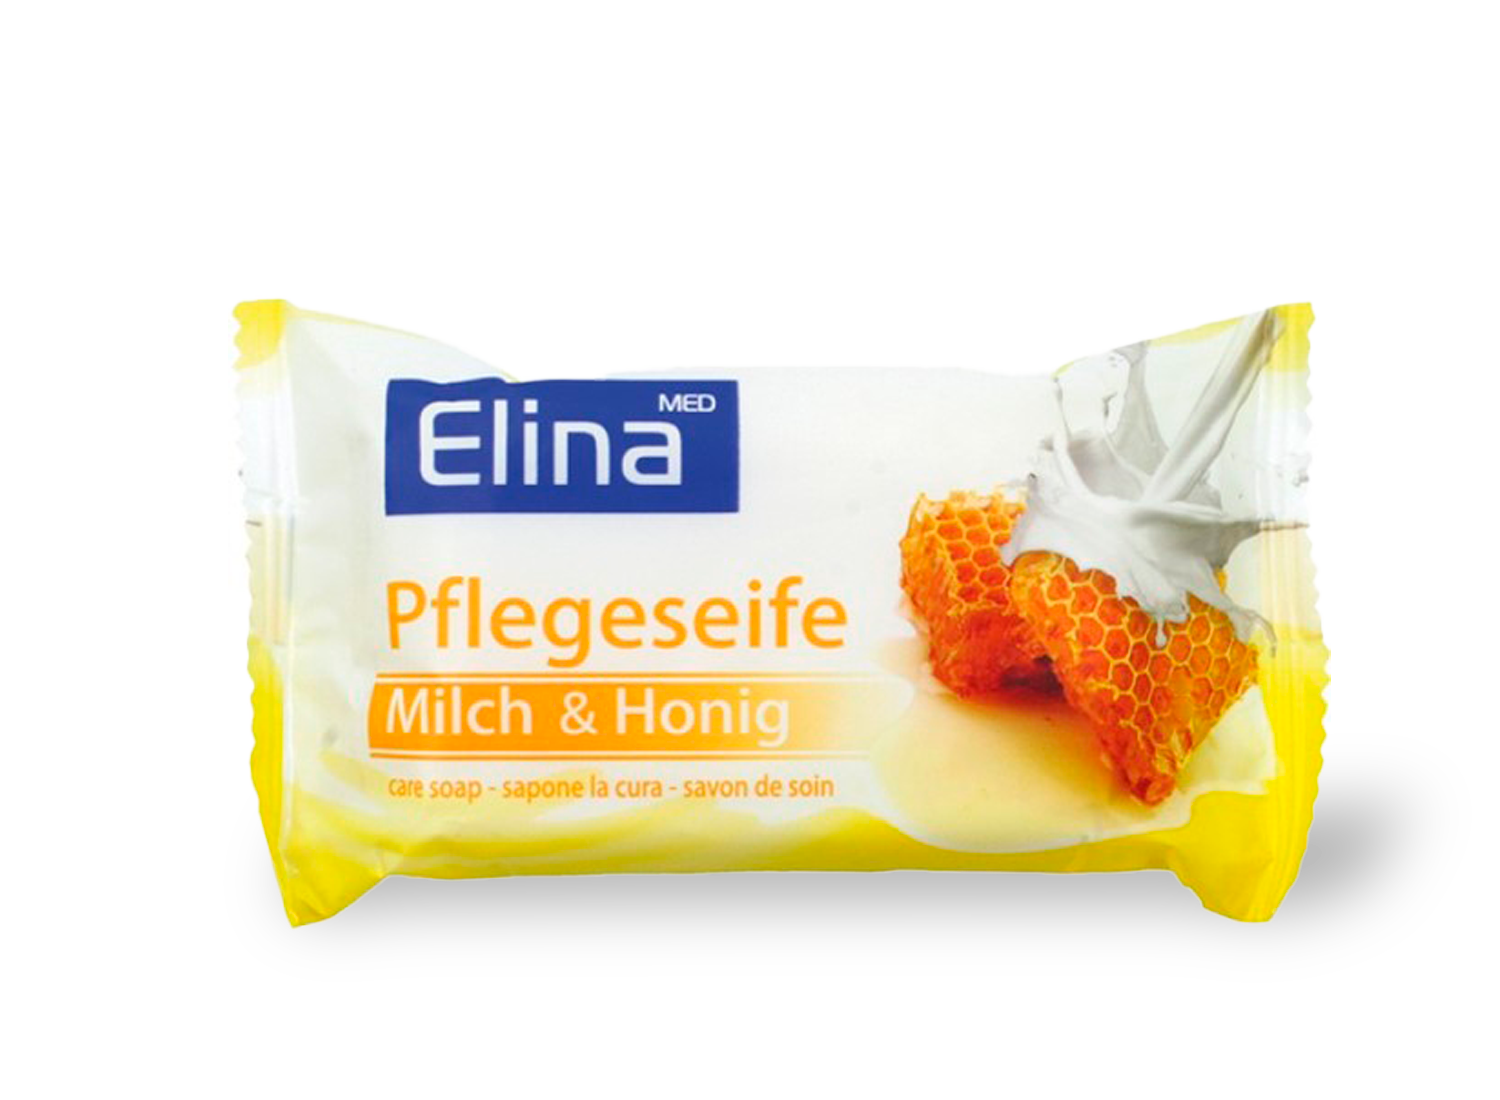 Elina Pflegeseife Milch/Honig